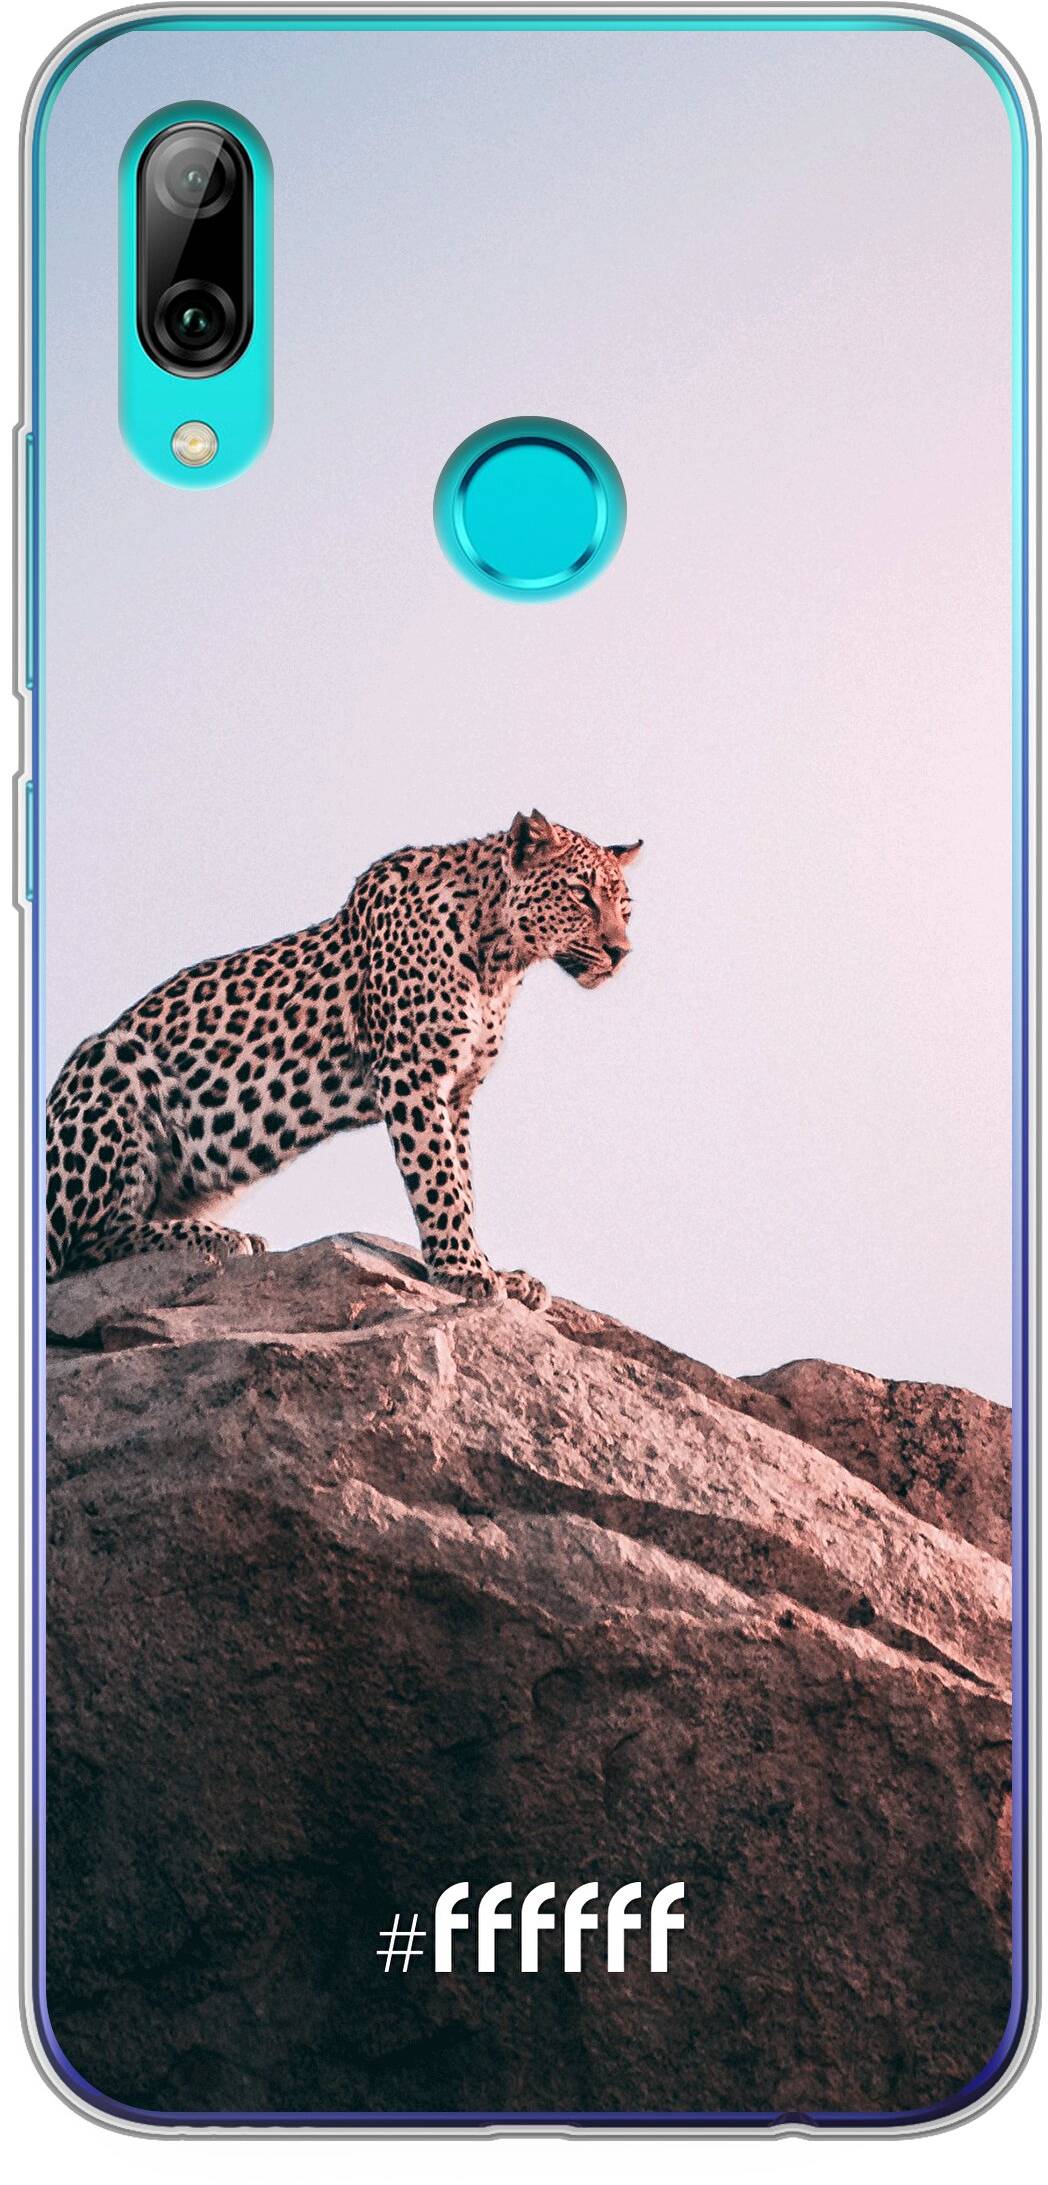 Leopard P Smart (2019)